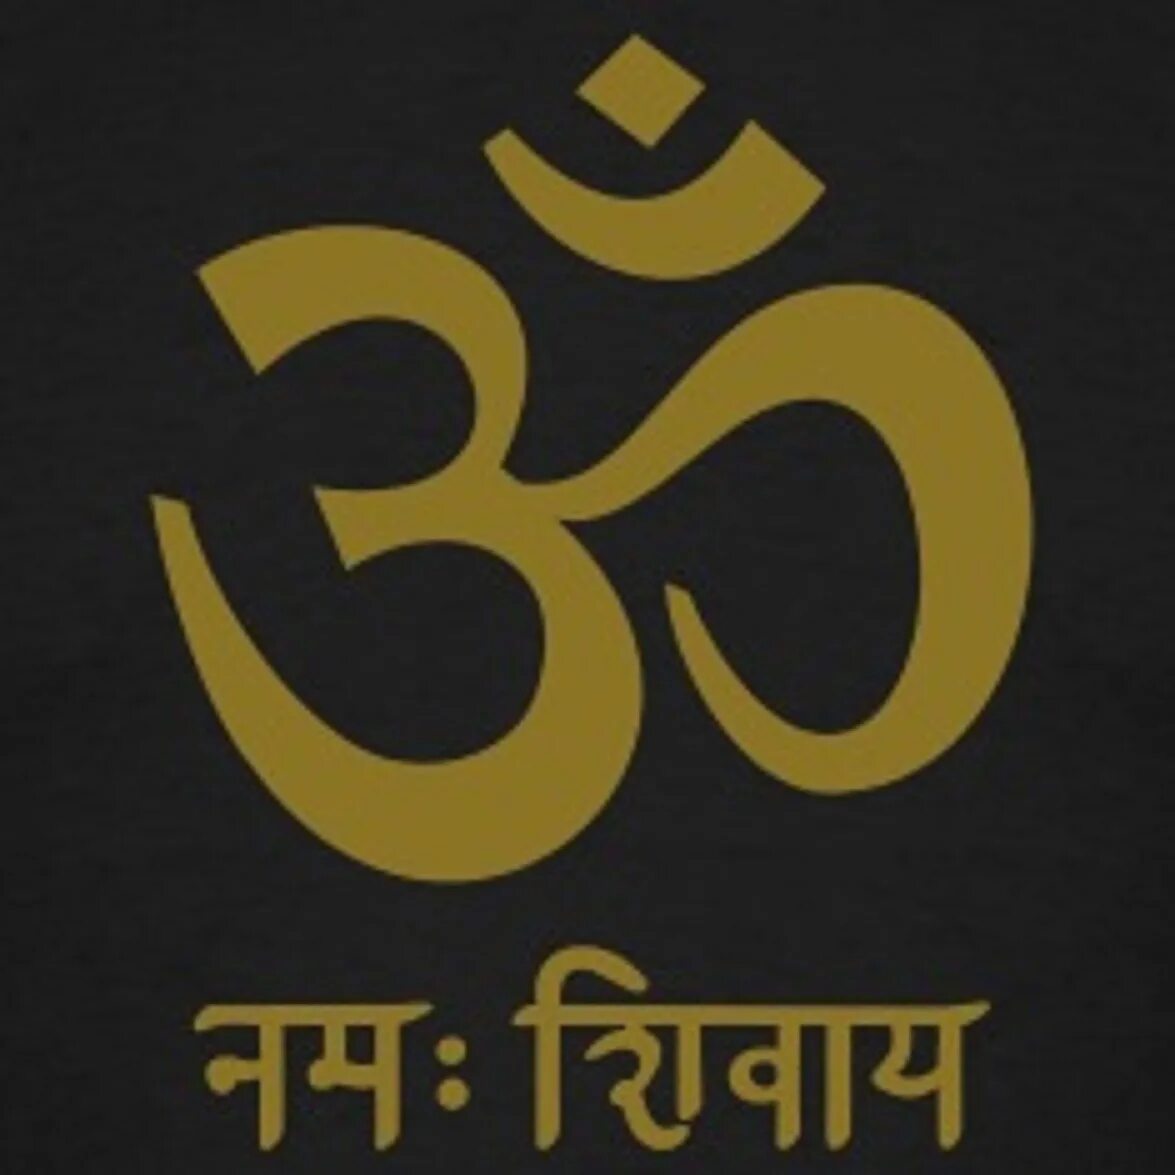 Om Namah Shivaya санскрит. Ом Намах Шивая на санскрите. Мантра ом Намах Шивайя на санскрите. Ом надпись на санскрите. Шивайя намах шивайя нама ом значение